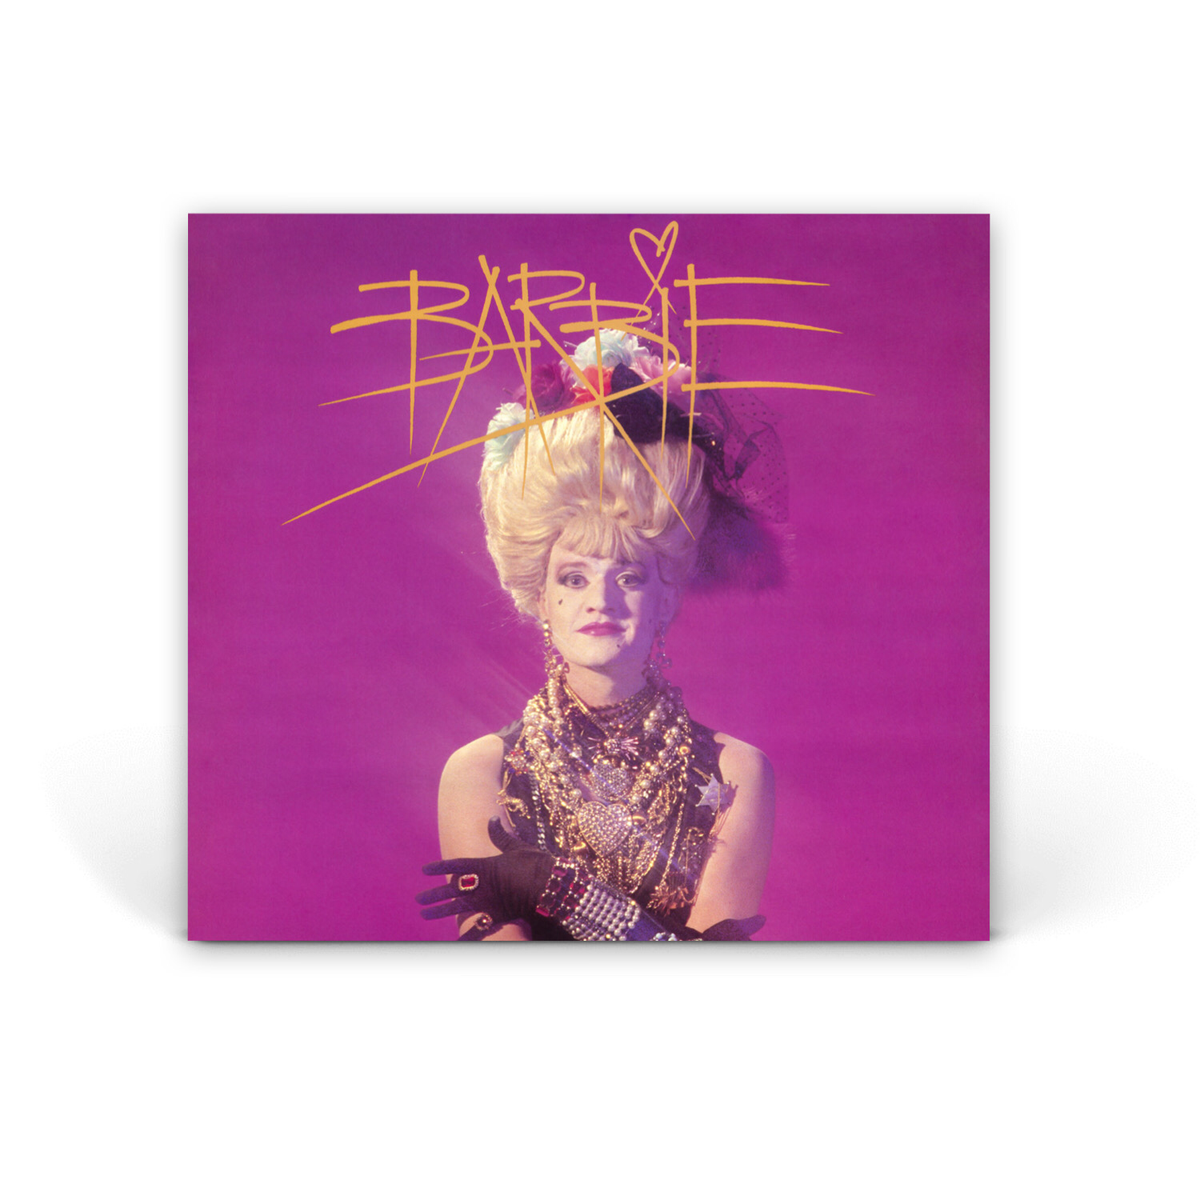 Компакт диски 2CD: Barbie — «Barbie» (1985/2019)